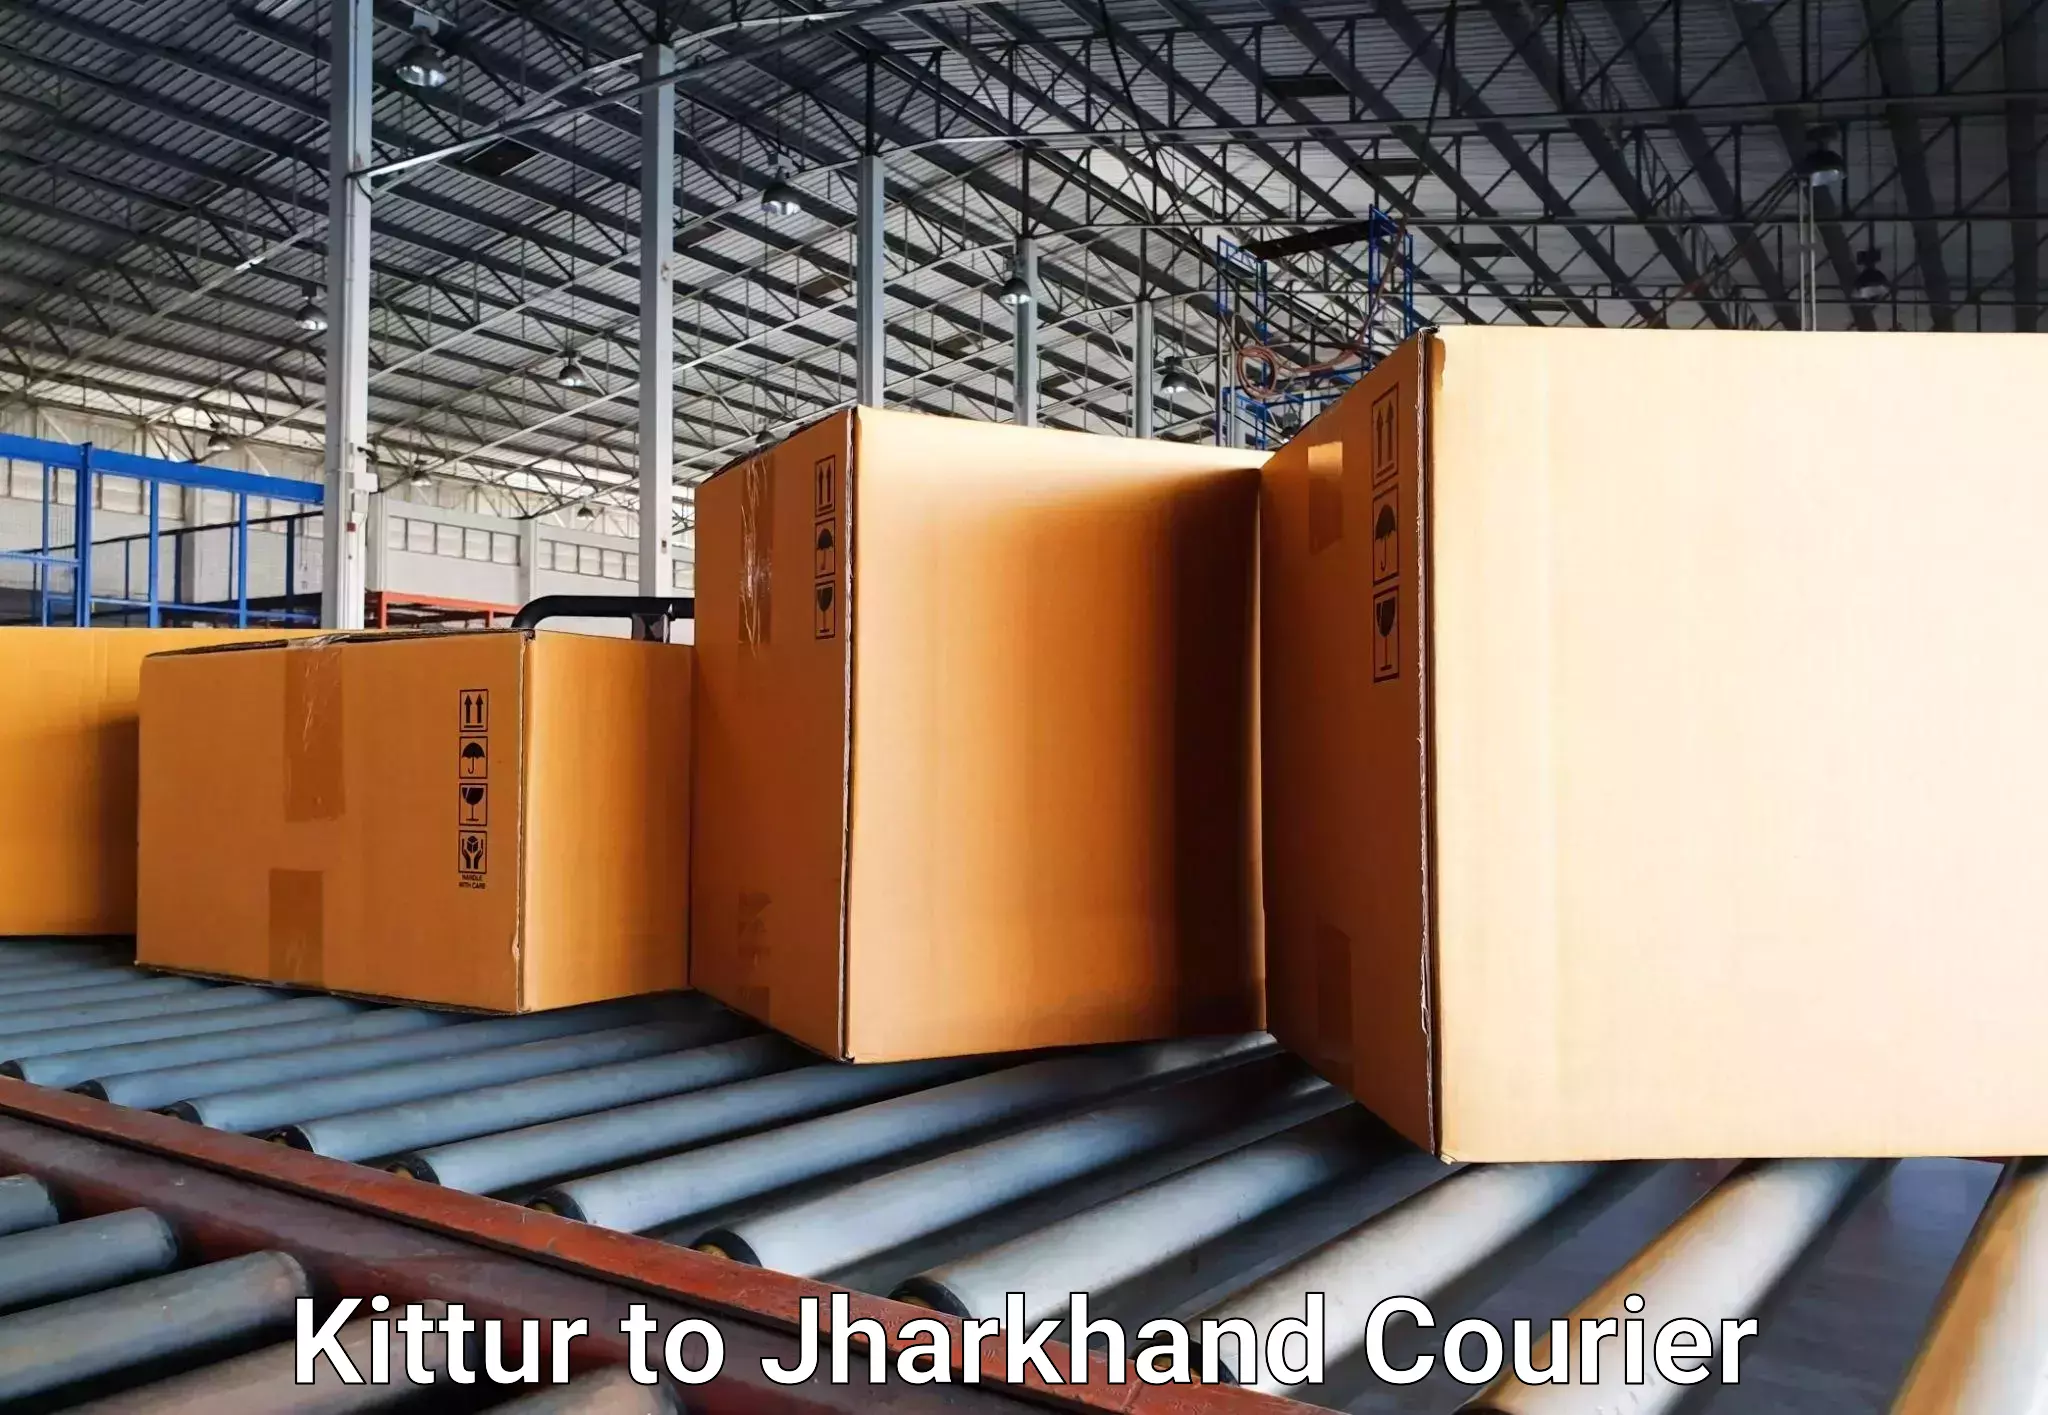 Door-to-door baggage service in Kittur to Adityapur